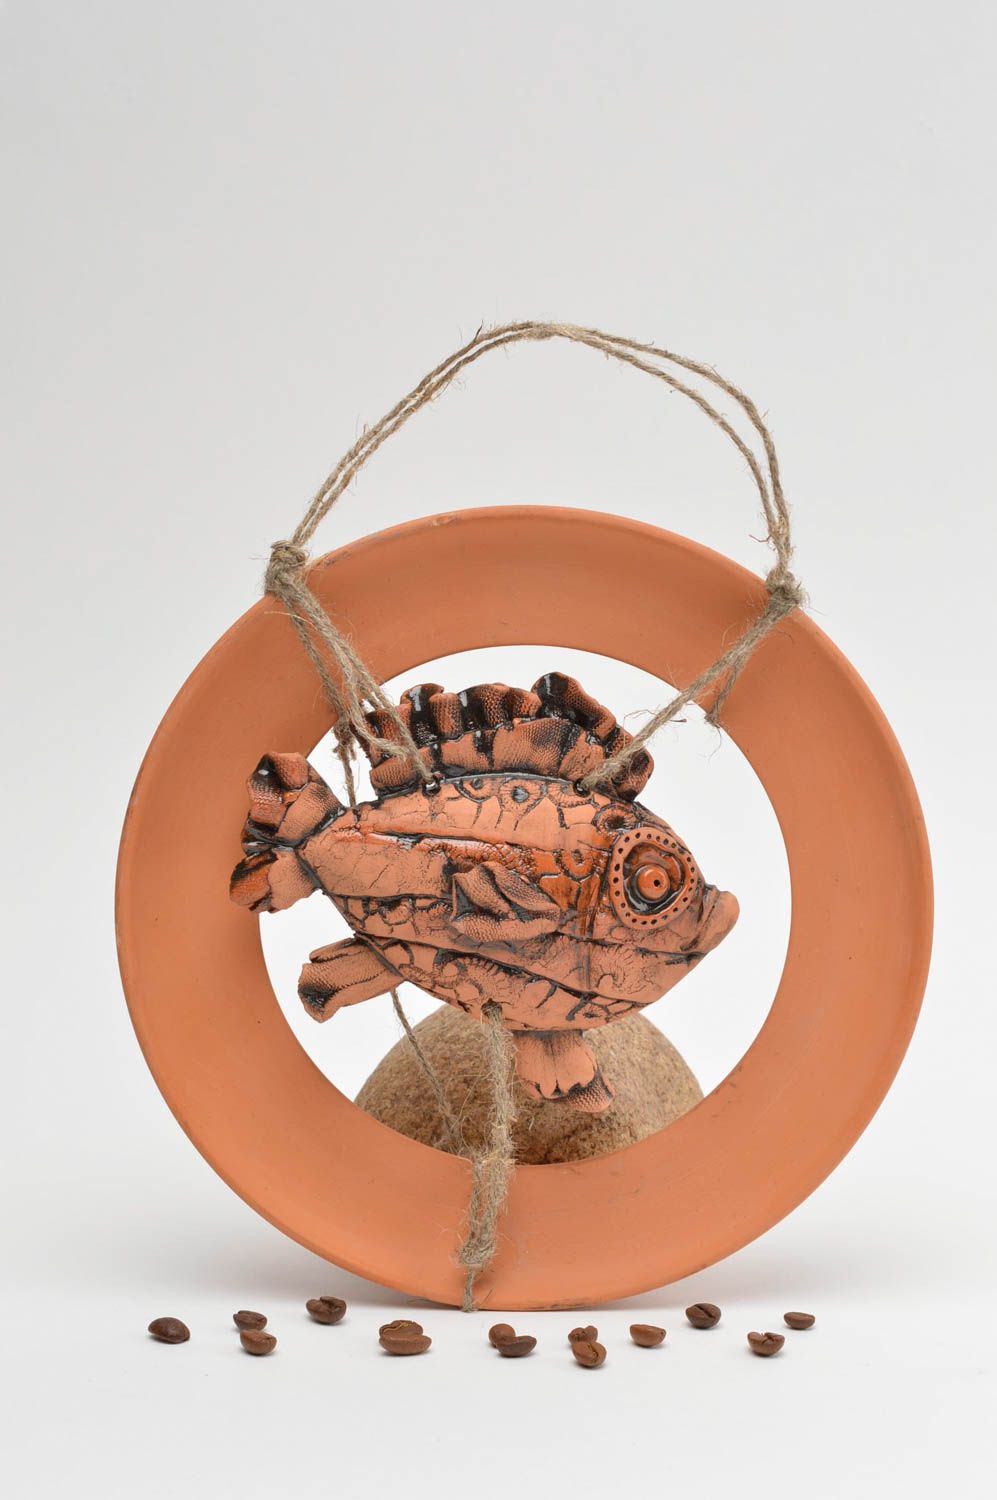 Глиняное панно круглое с рыбой на петельке красивое необычное ручной работы фото 1